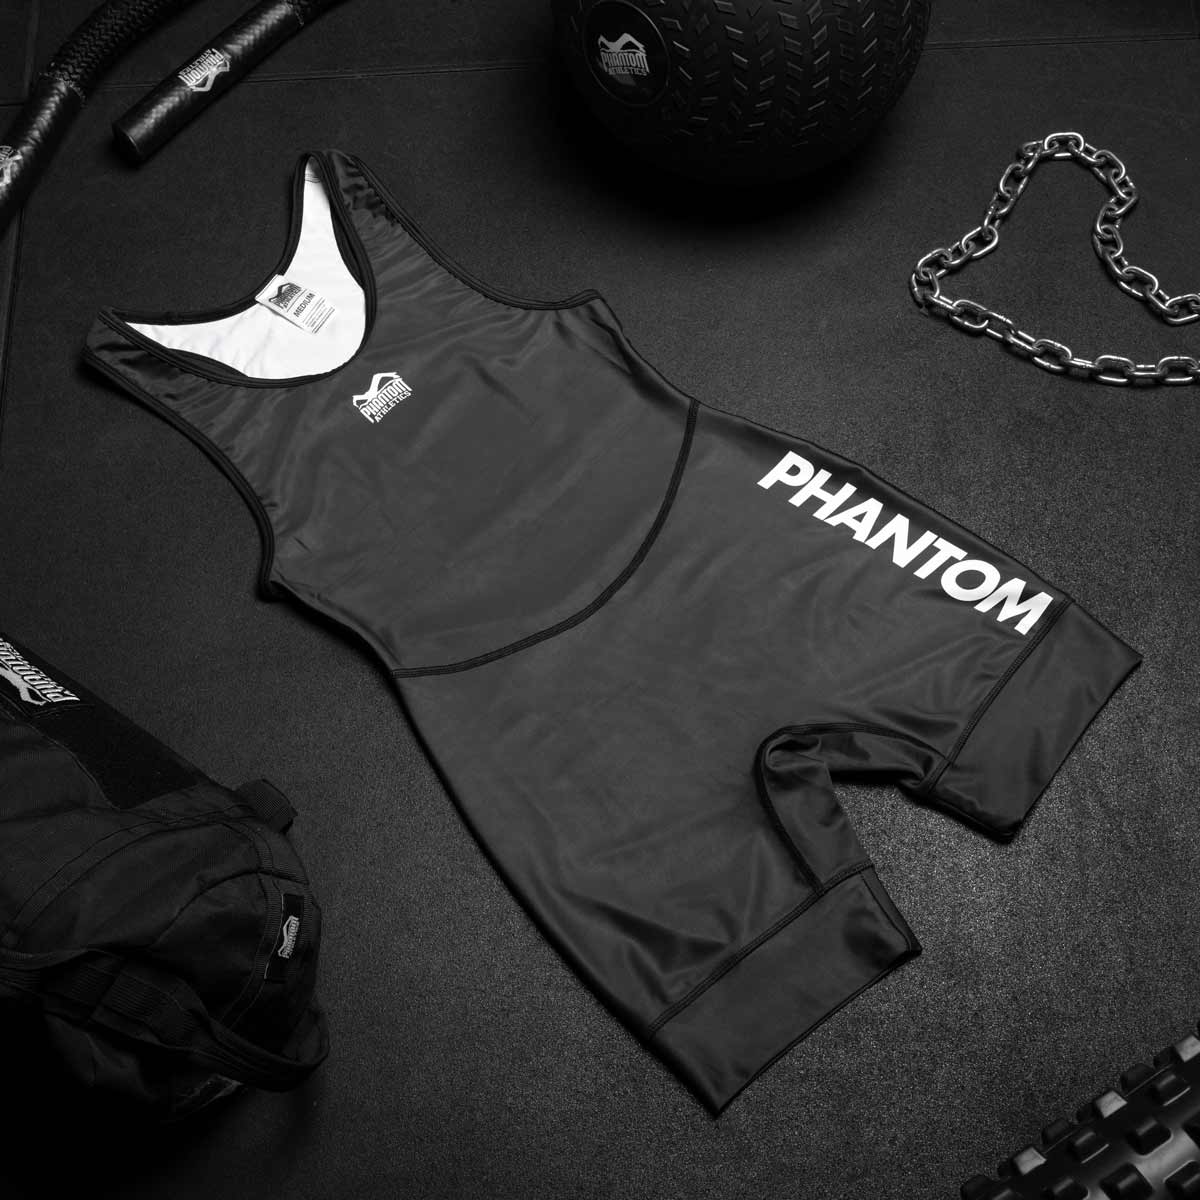 Phantom Ringertrikot Apex in der Farbe Schwarz. Ideal für dein Ringer Training. In hervorragender Passform und Haltbarkeit. Von Profis entwickelt und getragen.